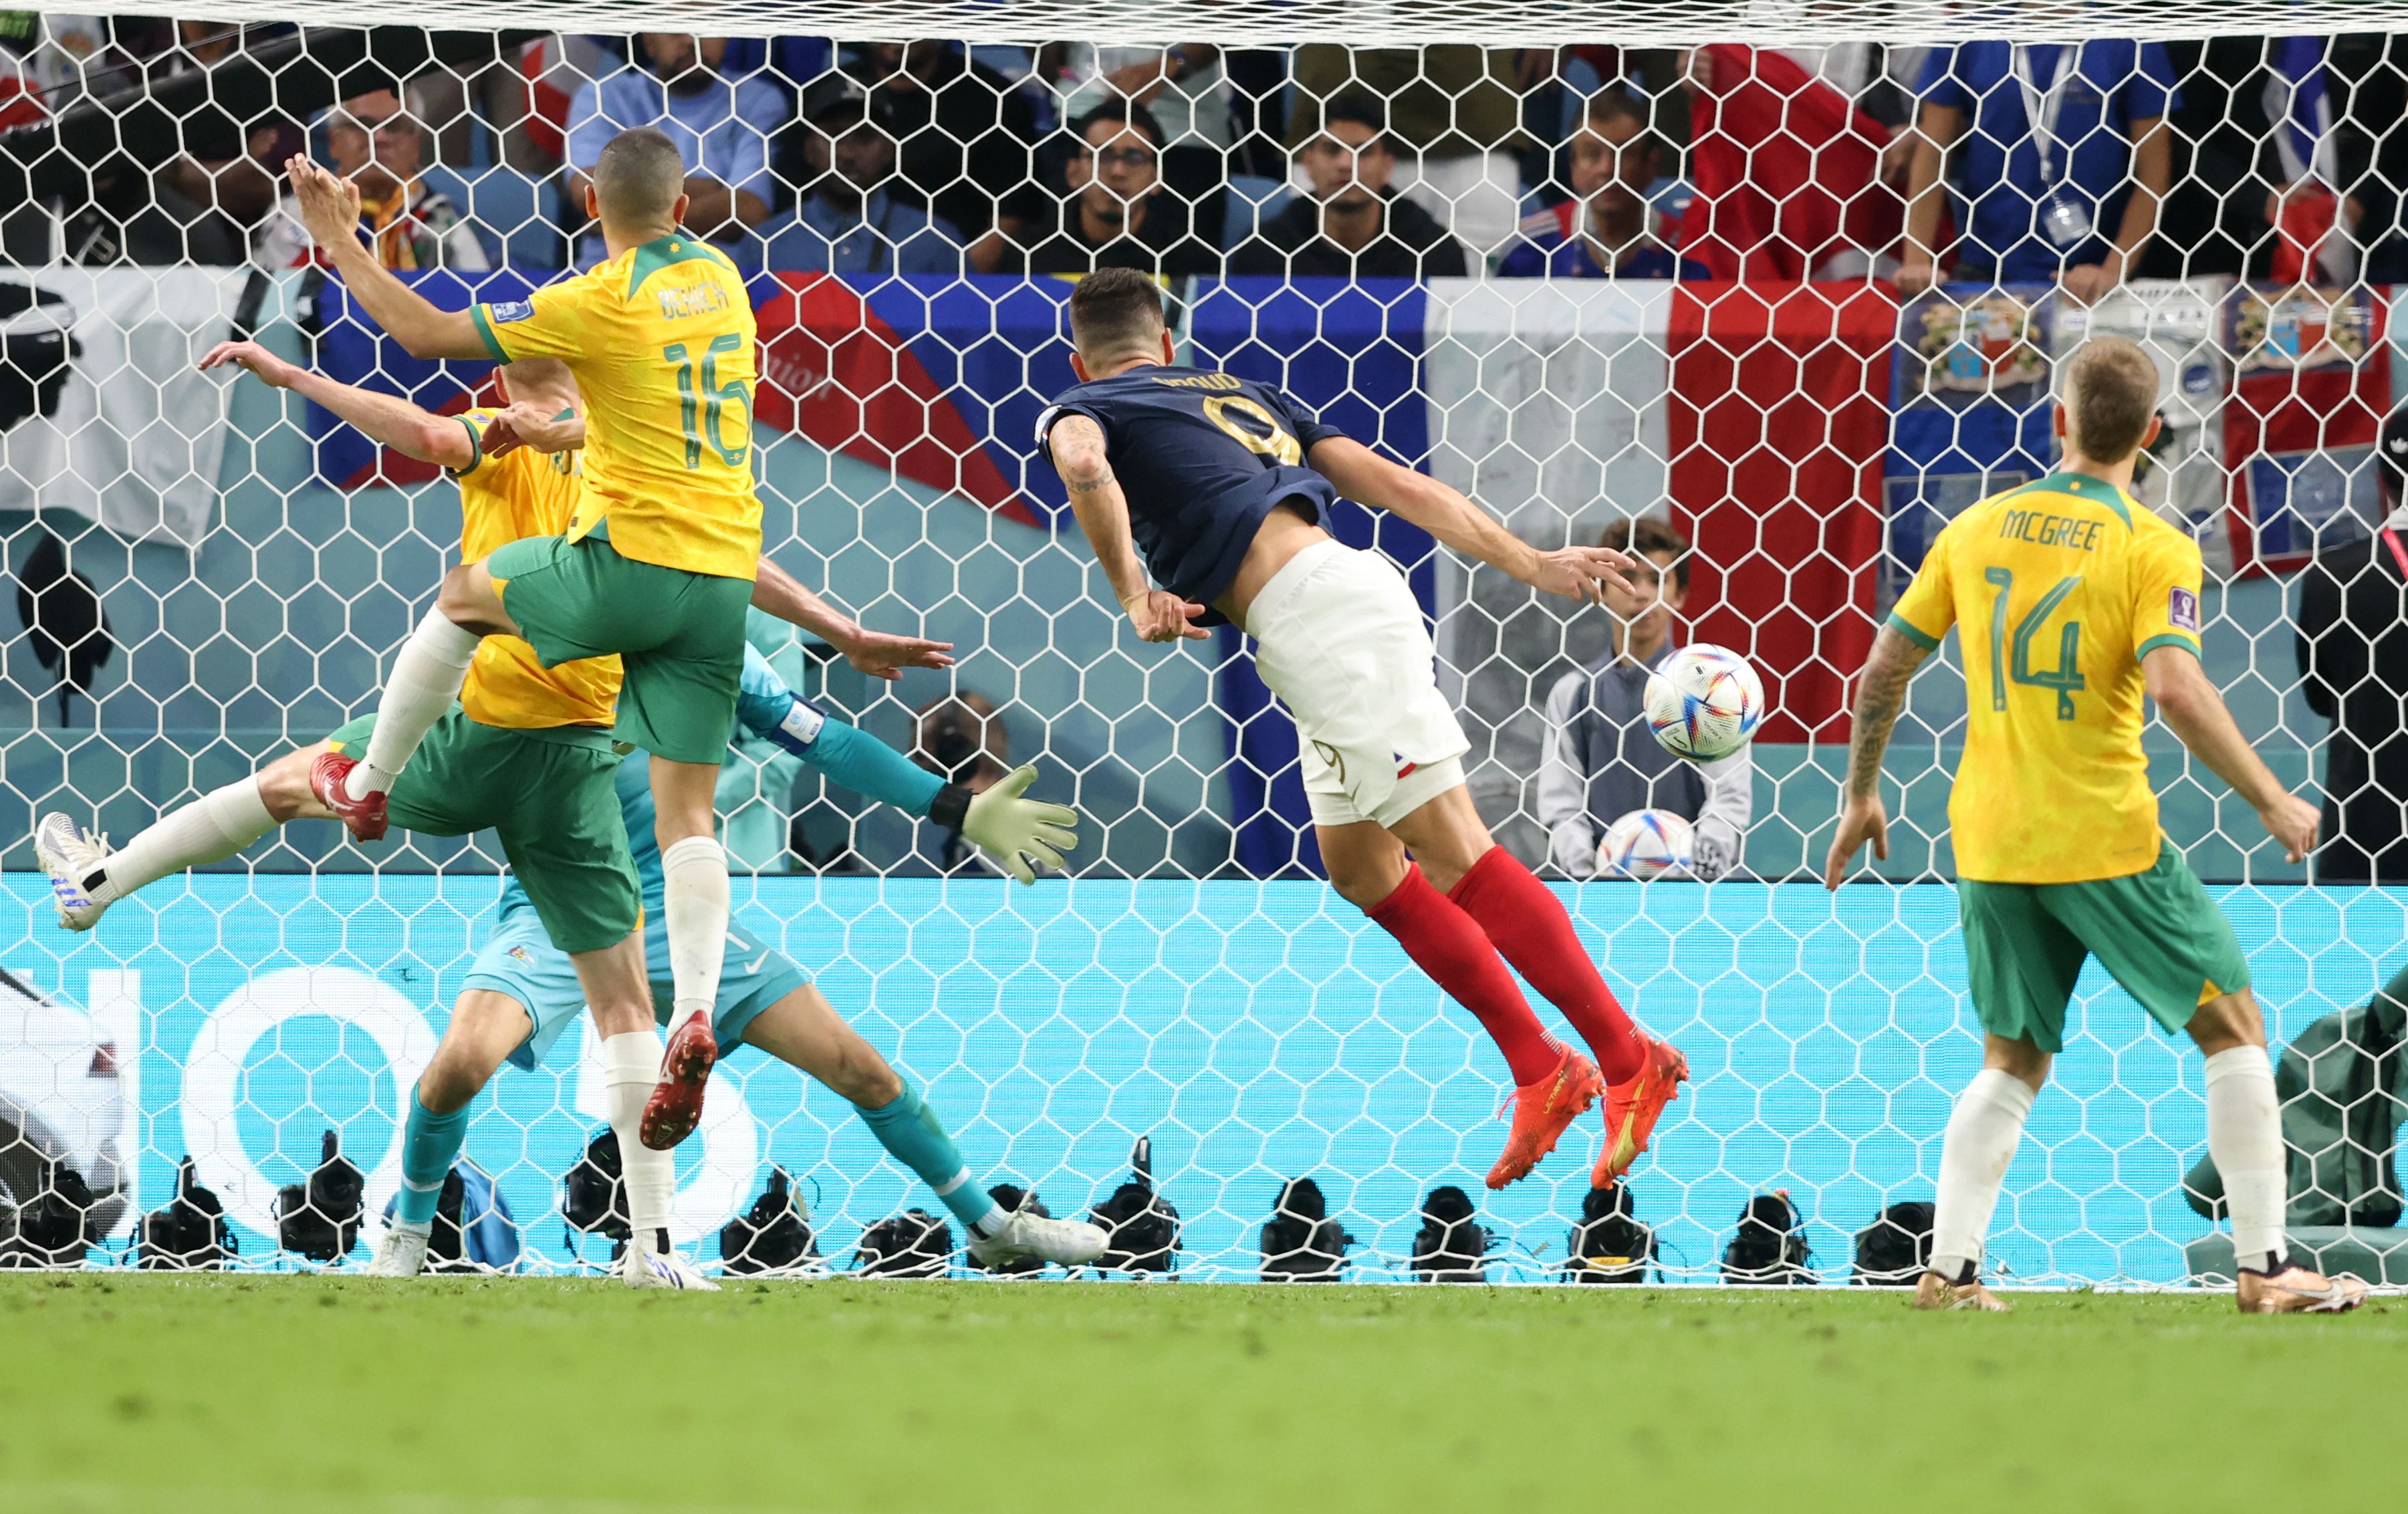 Sportal vébé TV: ,,A franciák élvezik a futballt, jó formában vannak, valószínűleg a dánokat is legyőzik" – Supka Attila